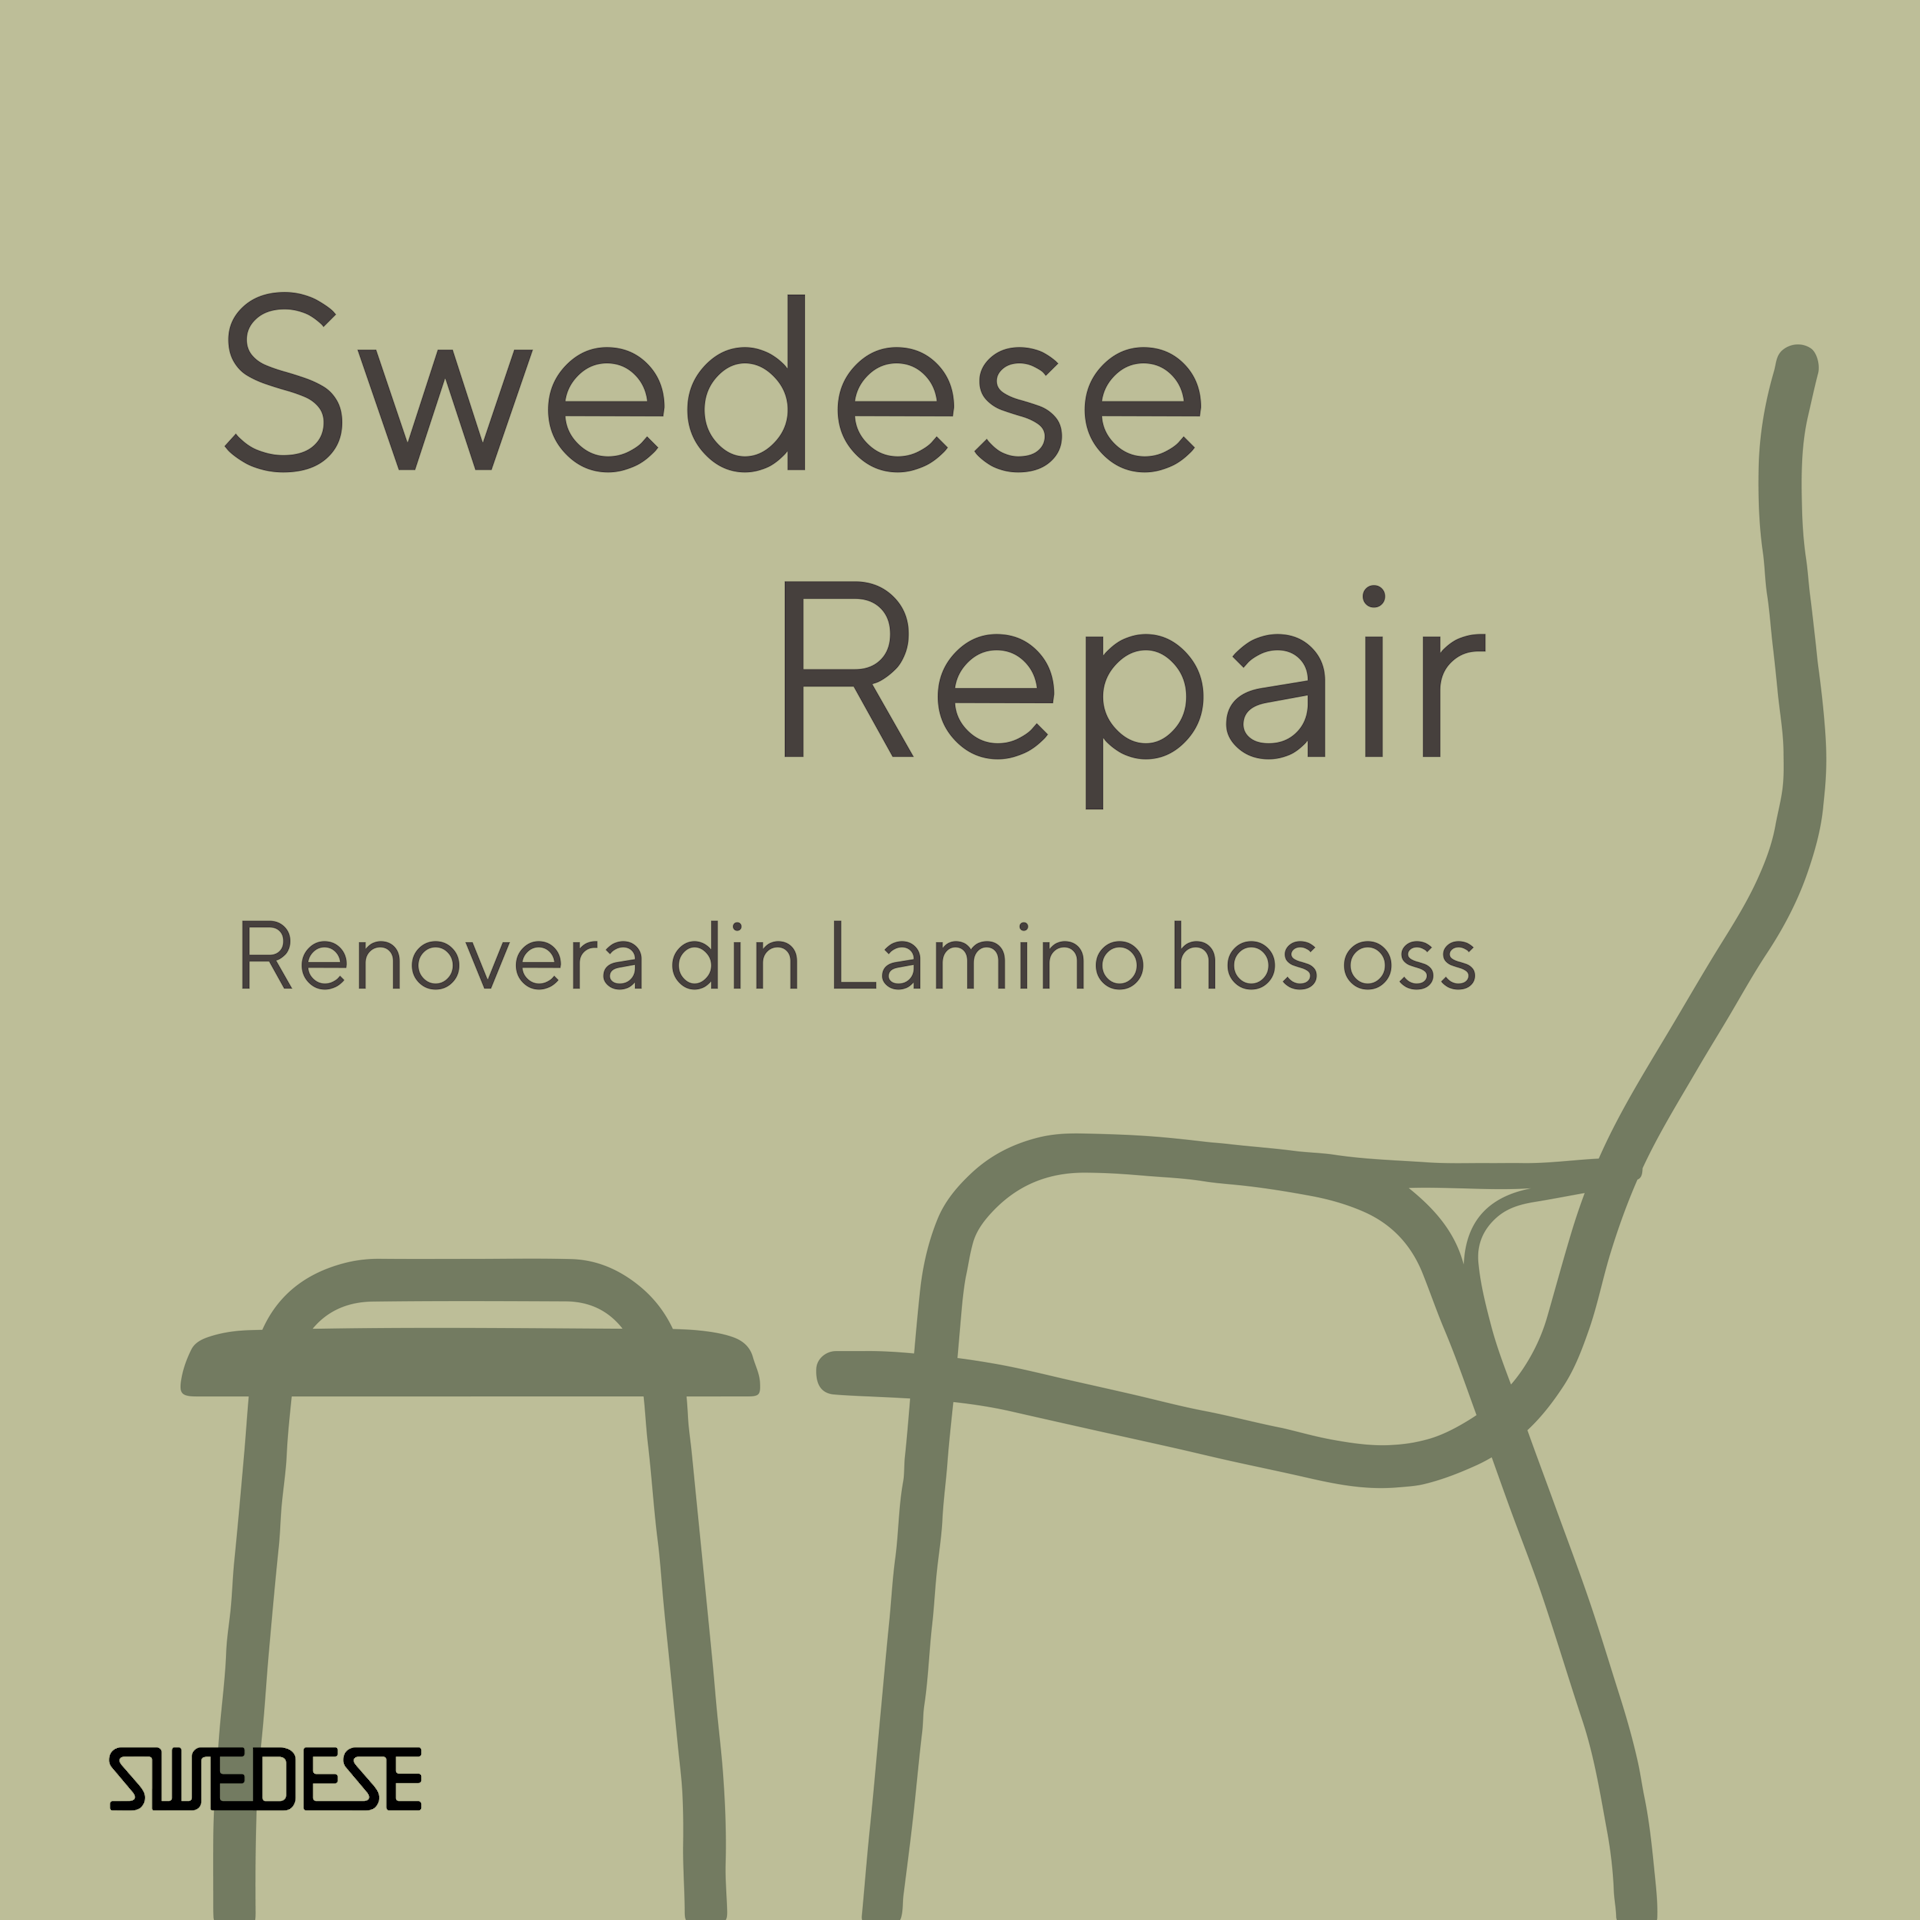 Kampanj: Swedese Repair